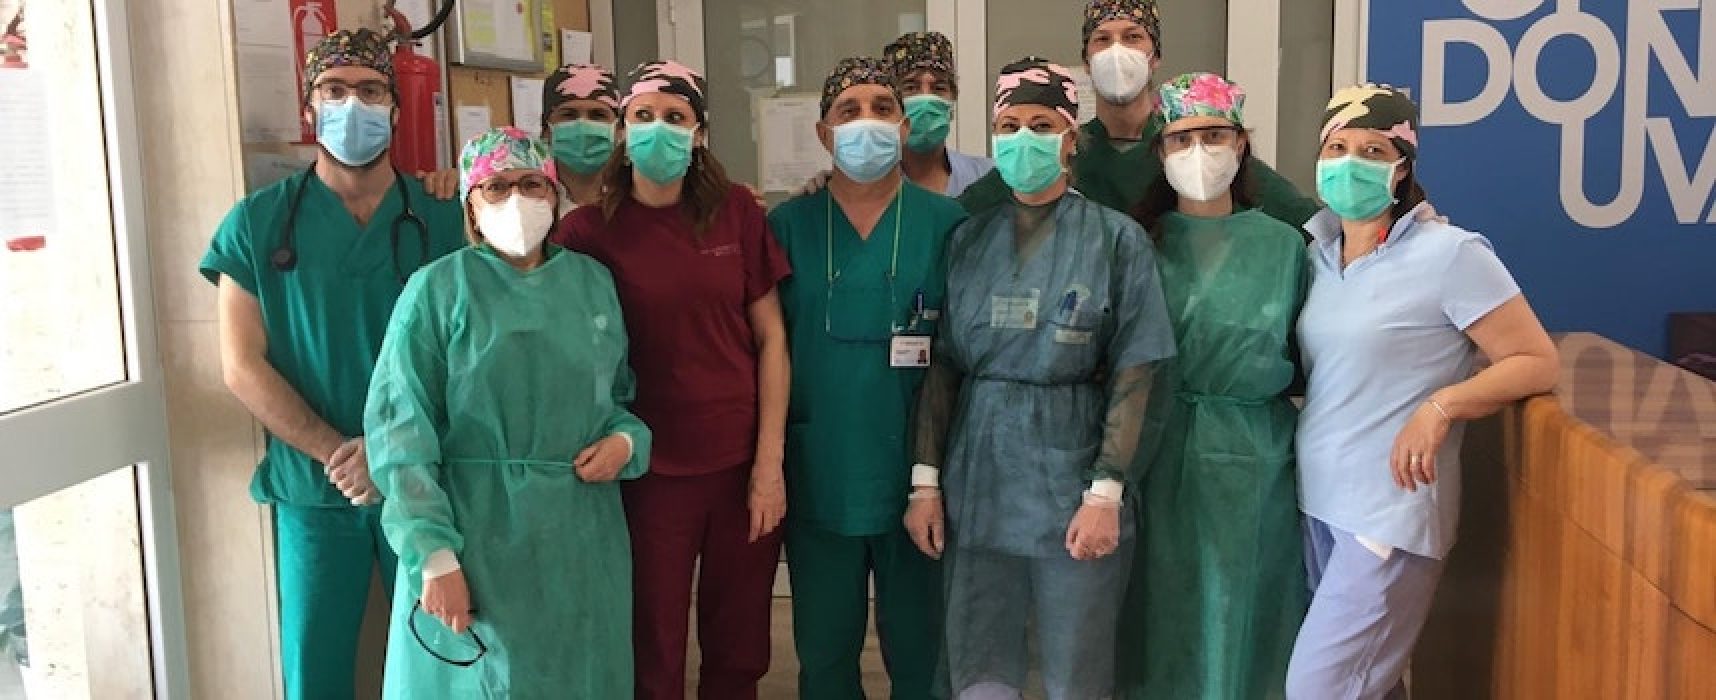 Universo Salute, coordinatrice Area Ospedaliera realizza cappellini per operatori